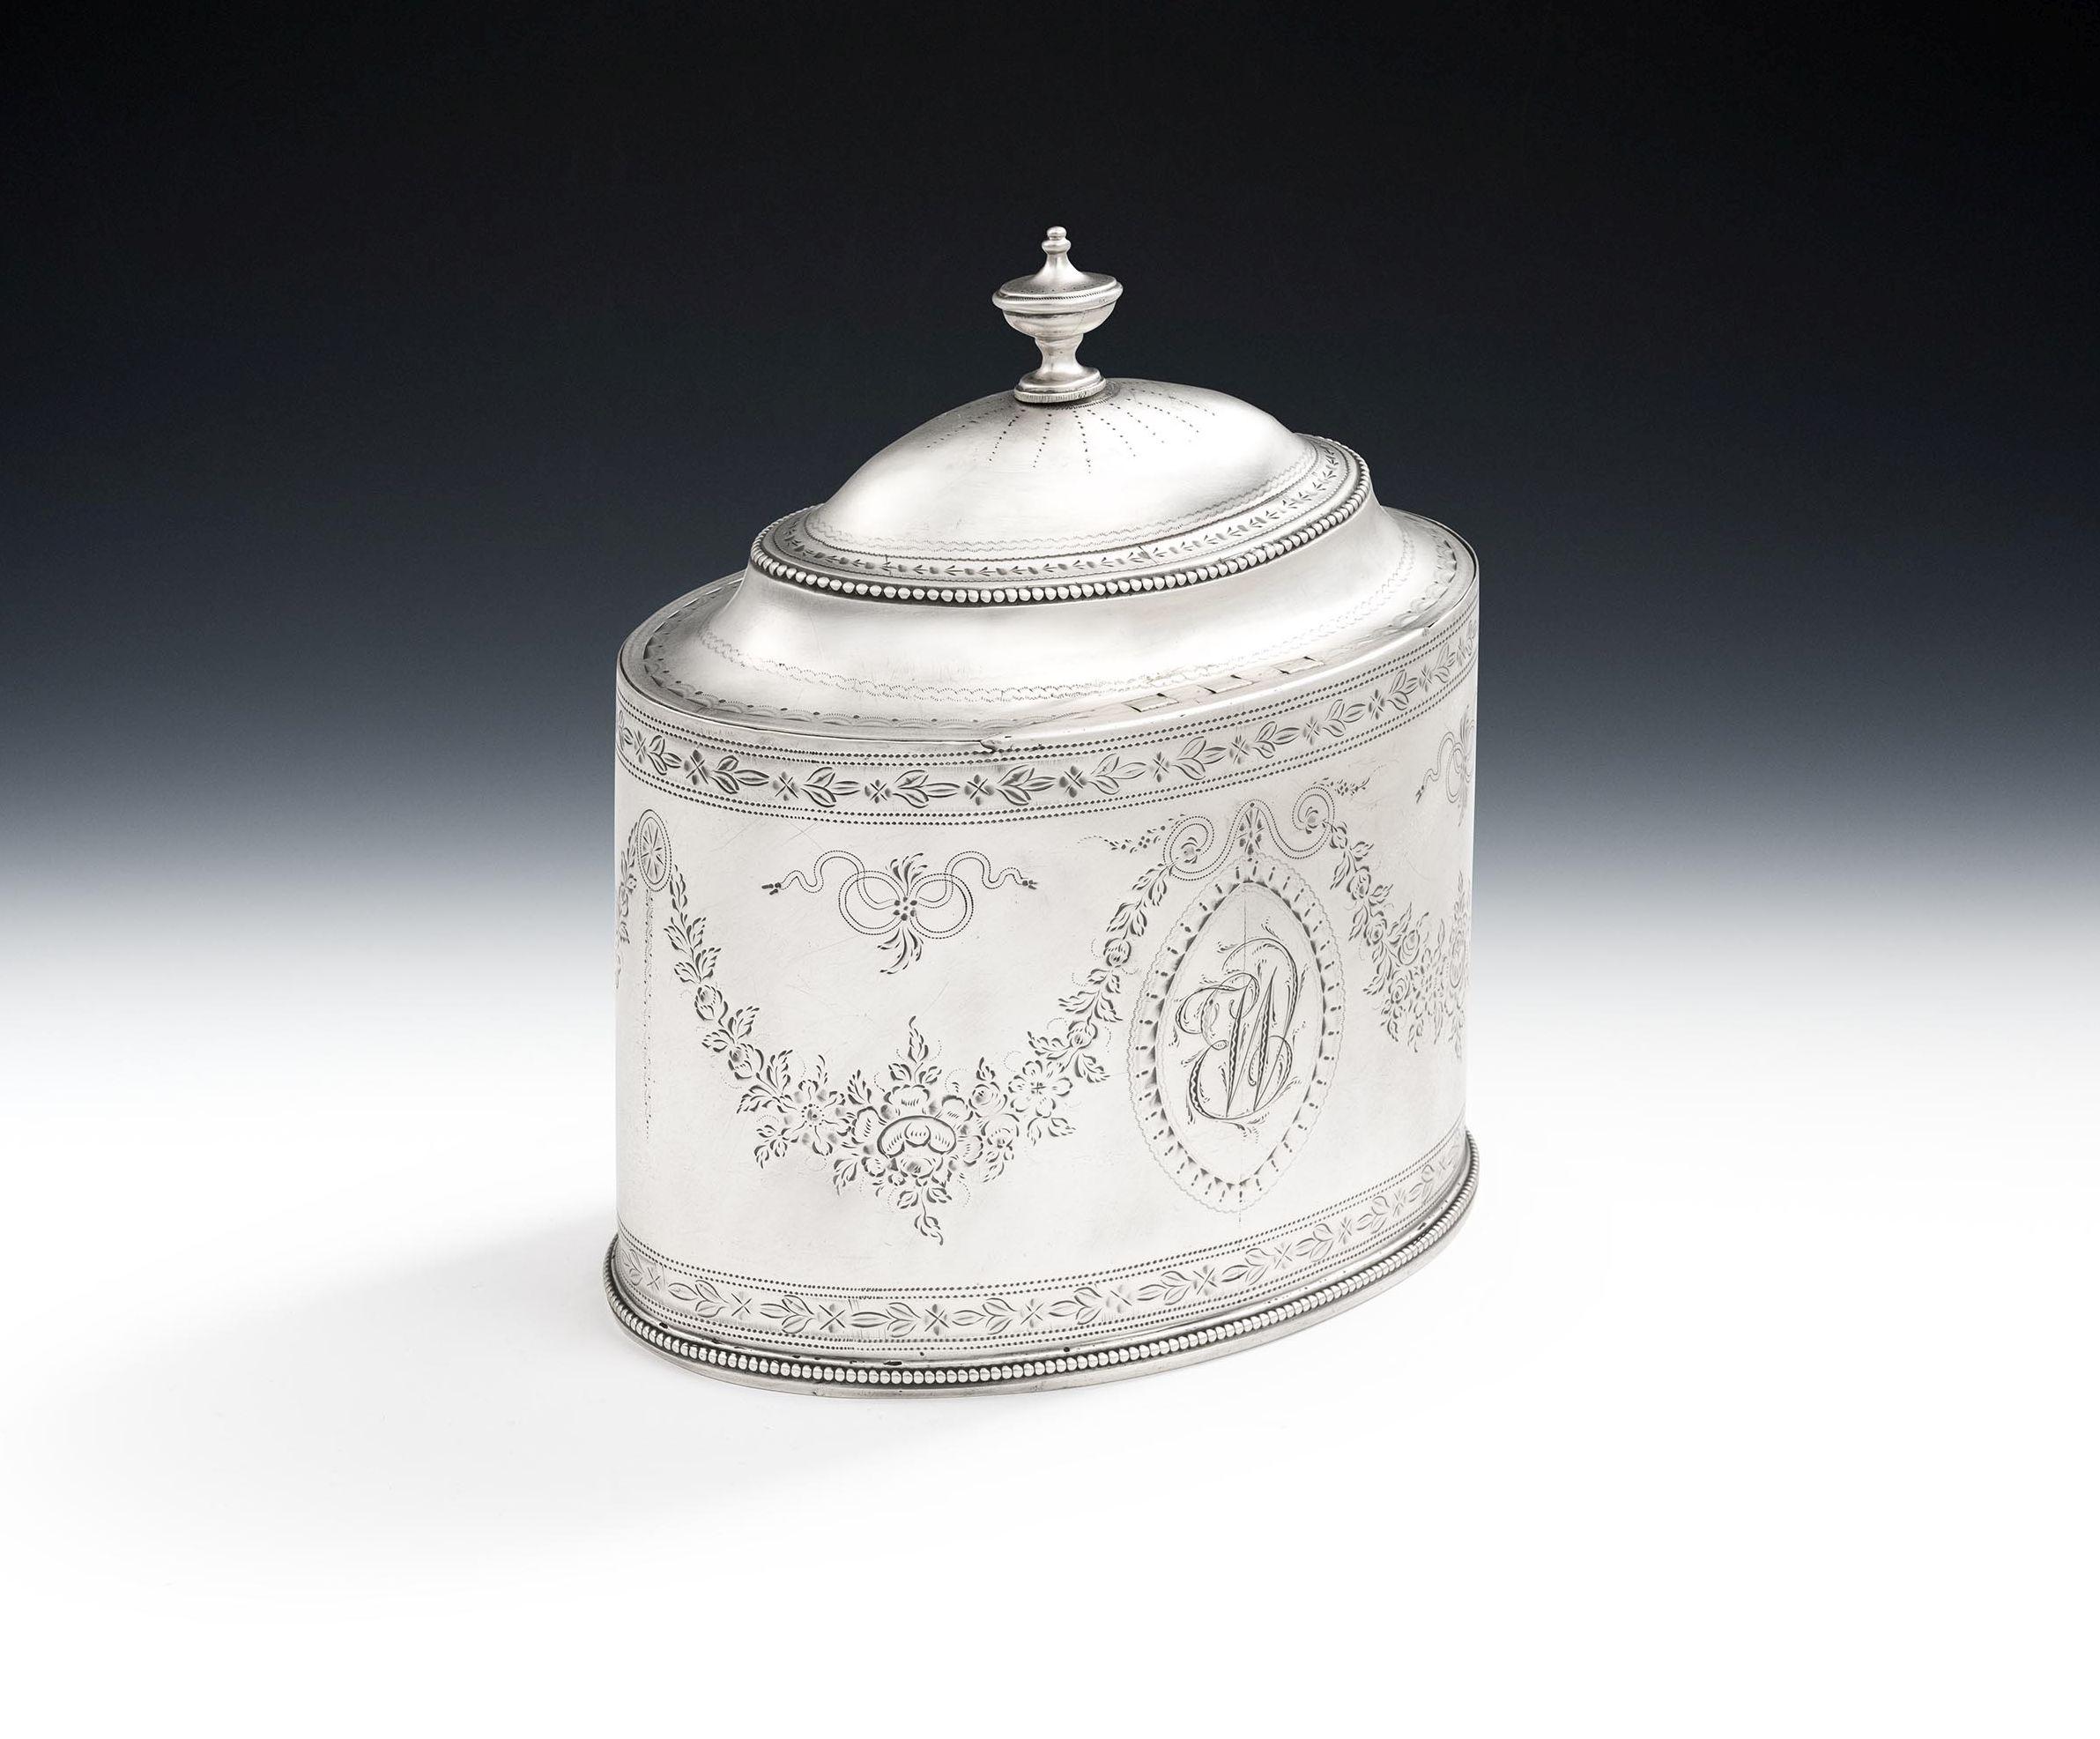 Une très rare et très belle boîte à thé George III fabriquée à Londres en 1787 par Hester Bateman.

Le Tea Caddy reprend un modèle connu des ateliers de Hester Bateman.  Ce bel exemple a une forme ovale avec une bande perlée à la base.  Le corps